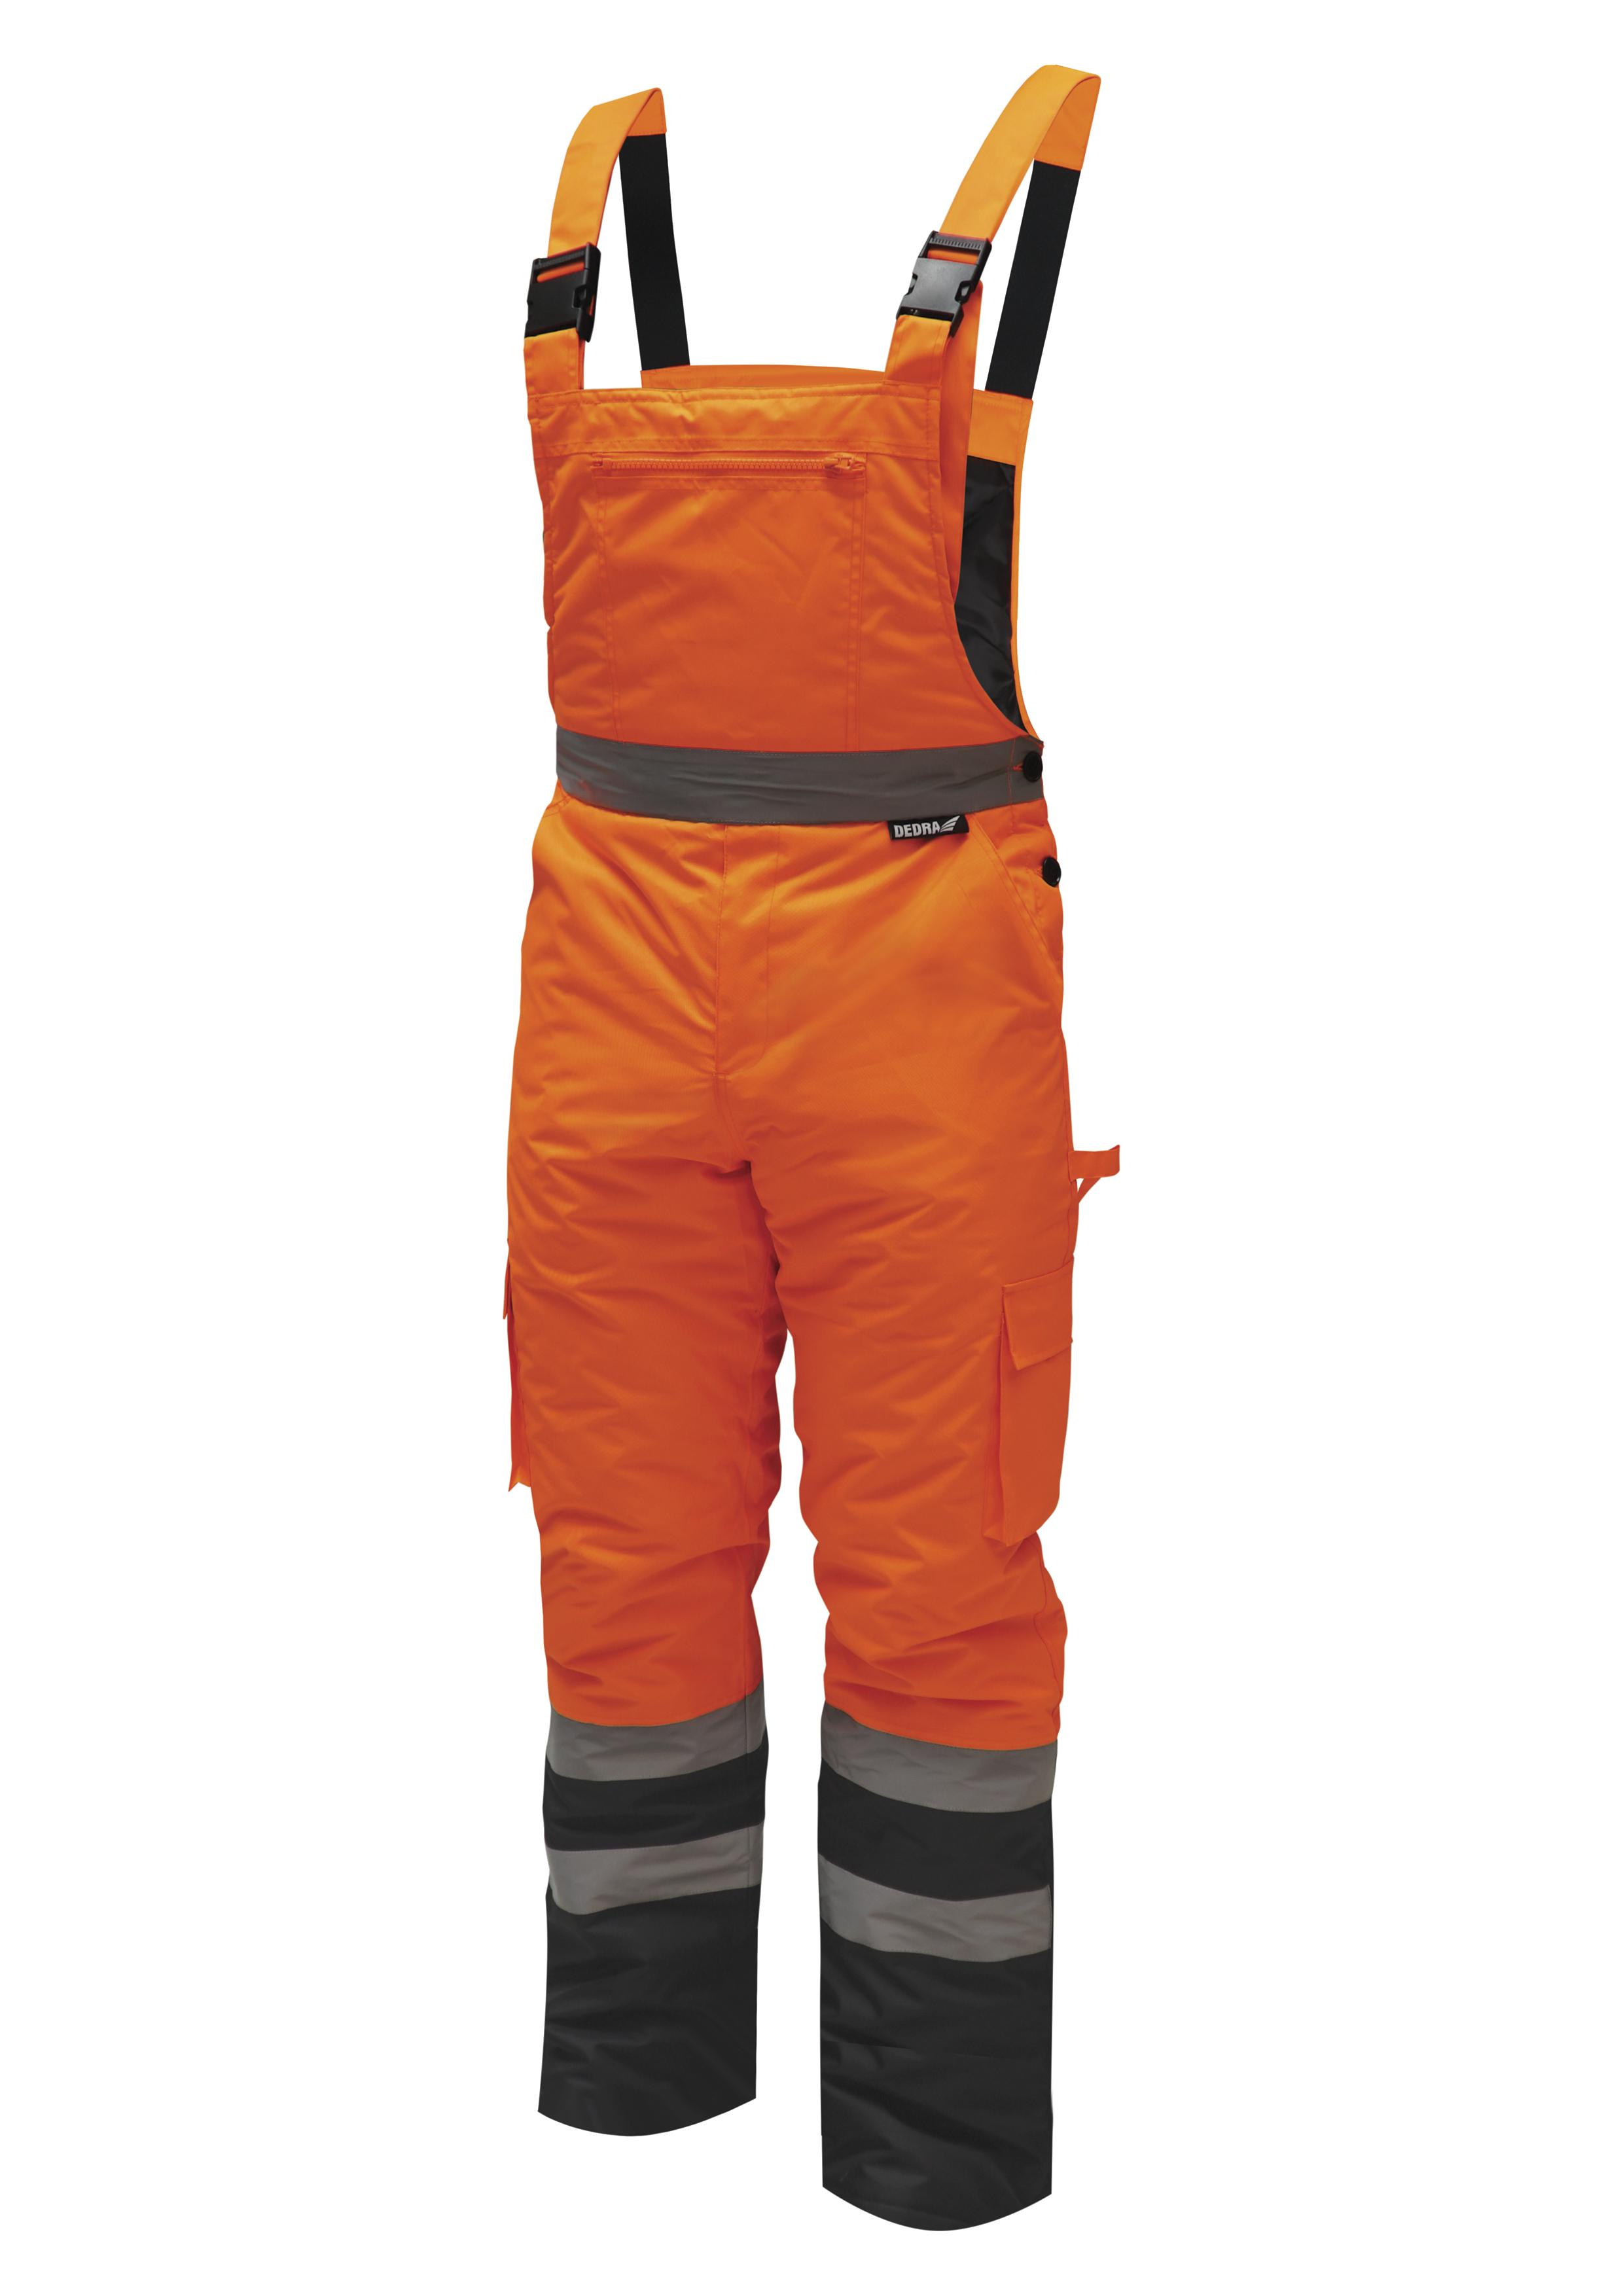 Reflexní zateplené kalhoty s laclem vel. XL,oranžové DEDRA BH80SO2-XL + Dárek, servis bez starostí v hodnotě 300Kč